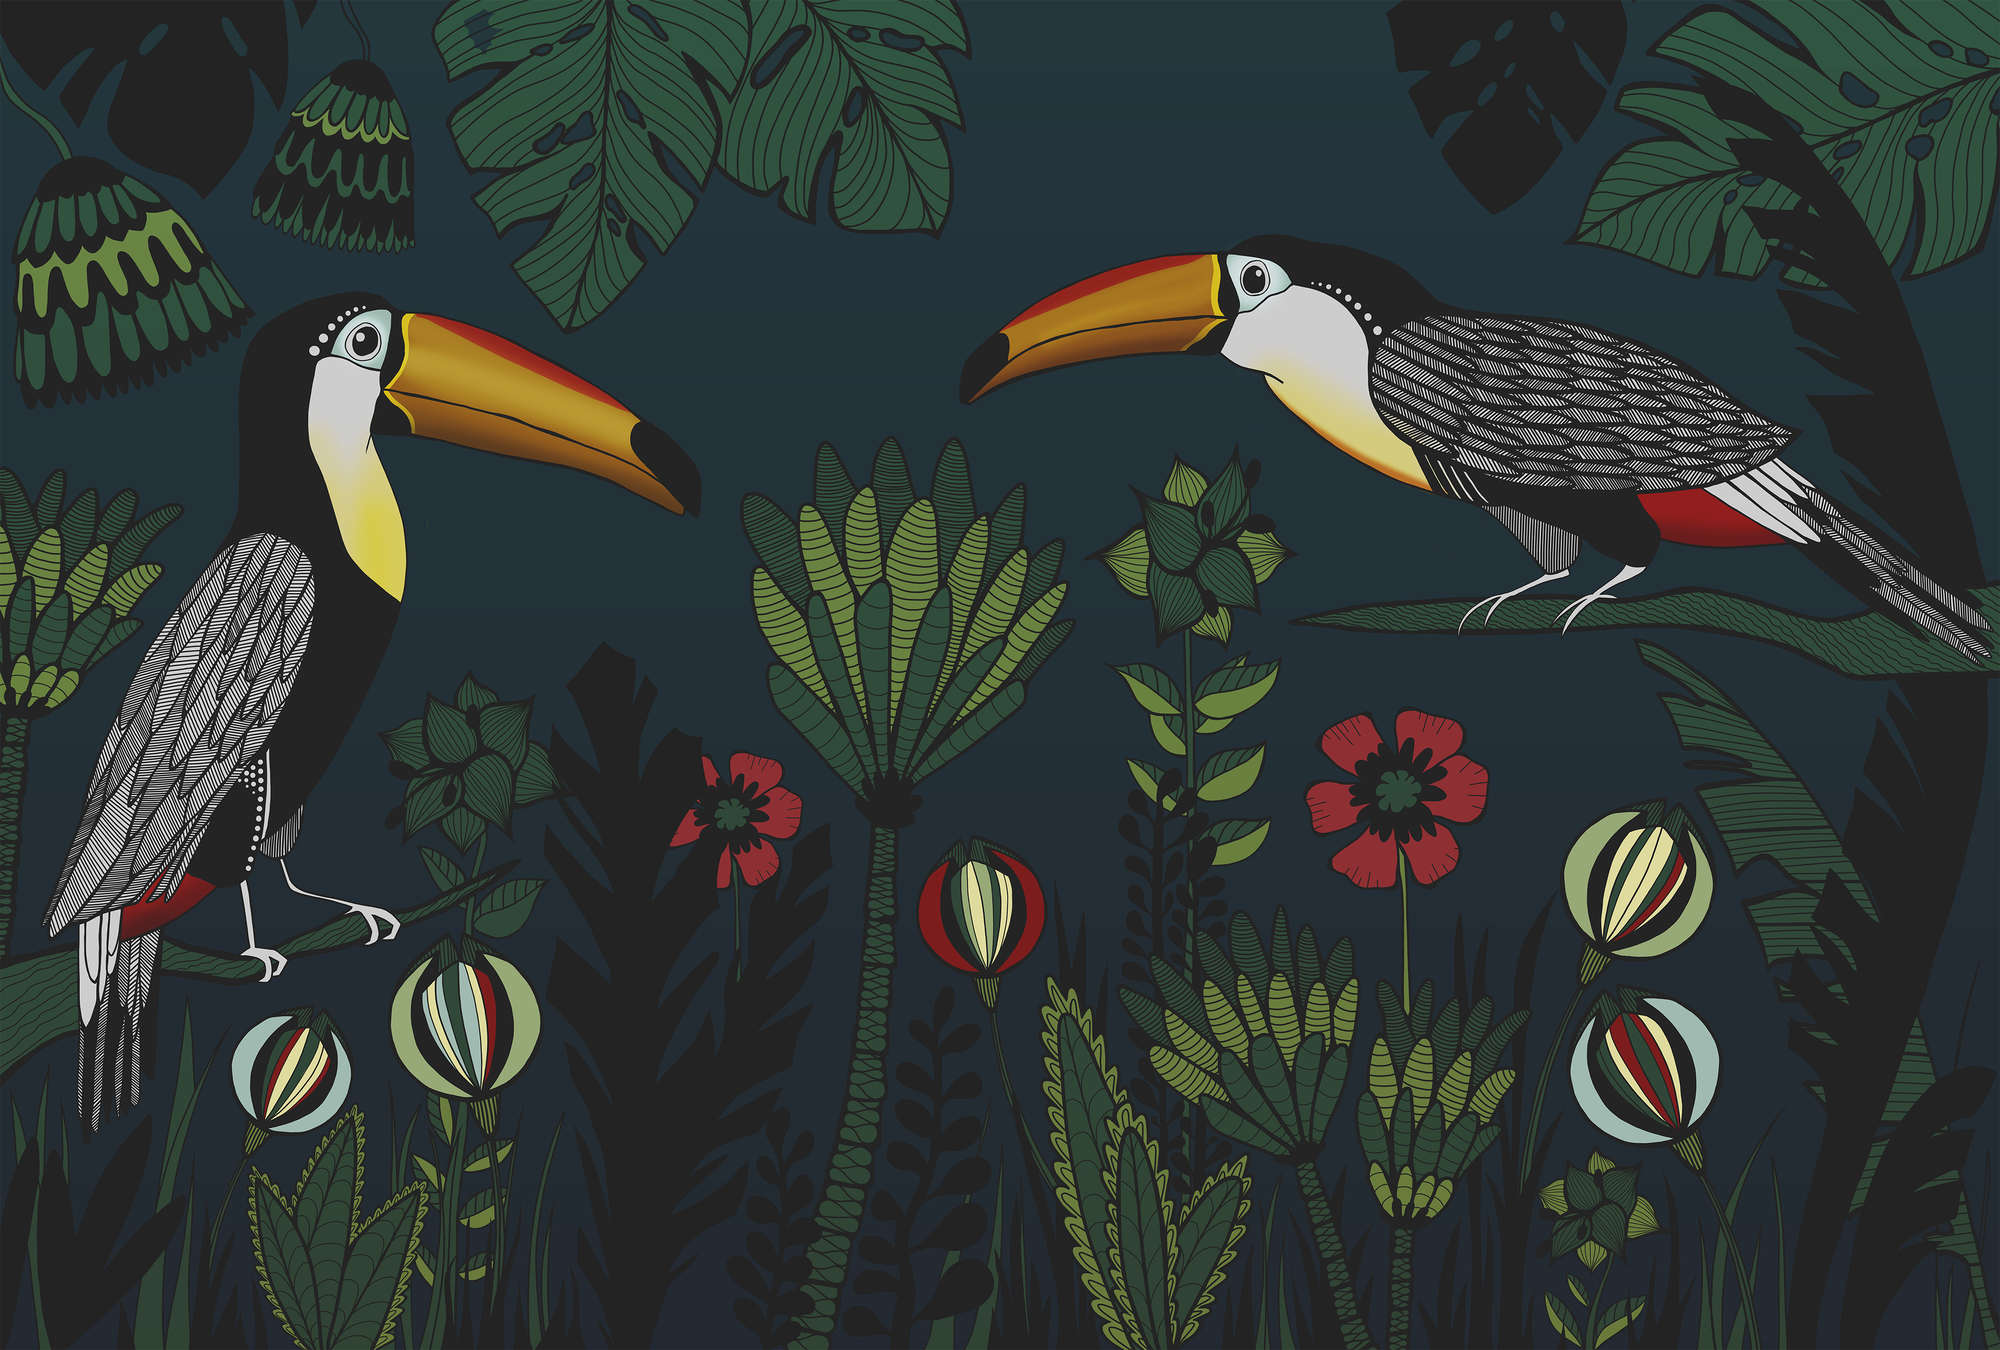             Muurschildering Junglepatroon met Vogels in Tekenstijl
        